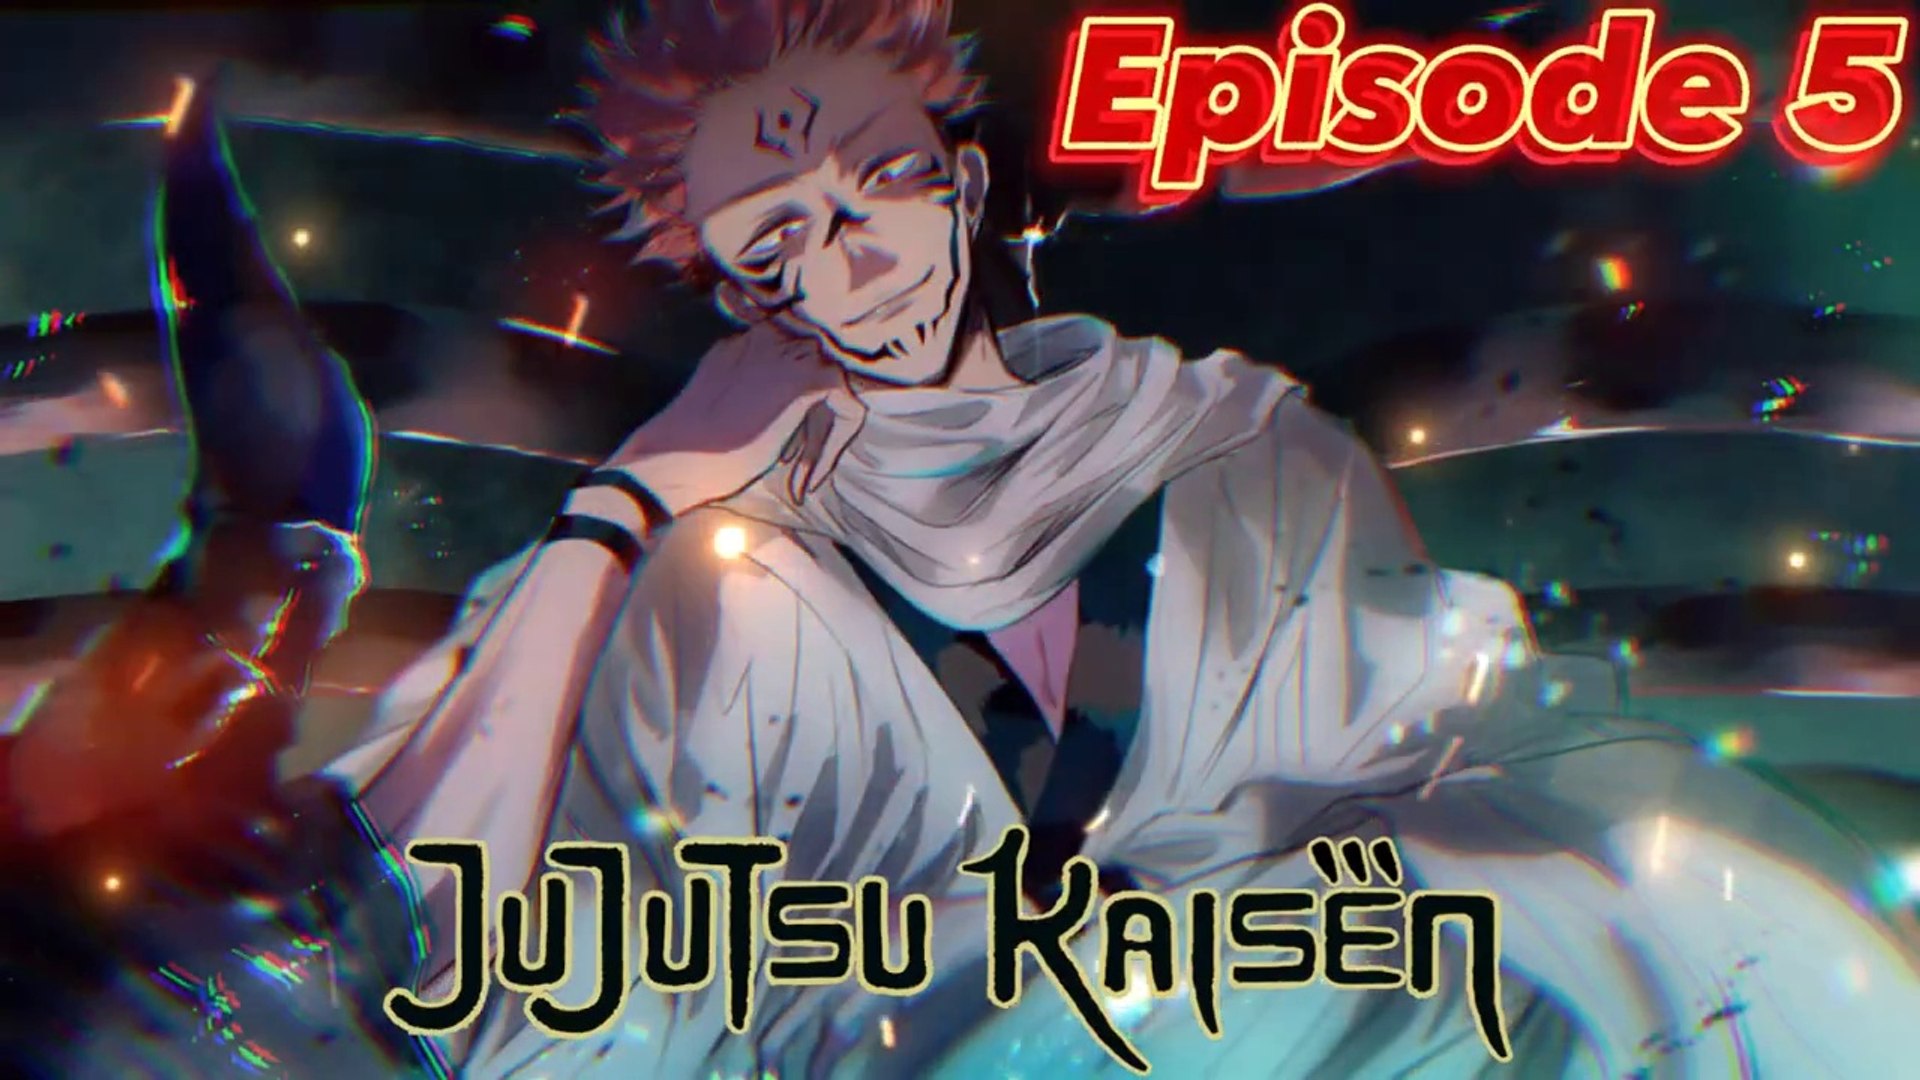 L'anime Jujutsu Kaisen Saison 2 dévoile son affiche teaser de l